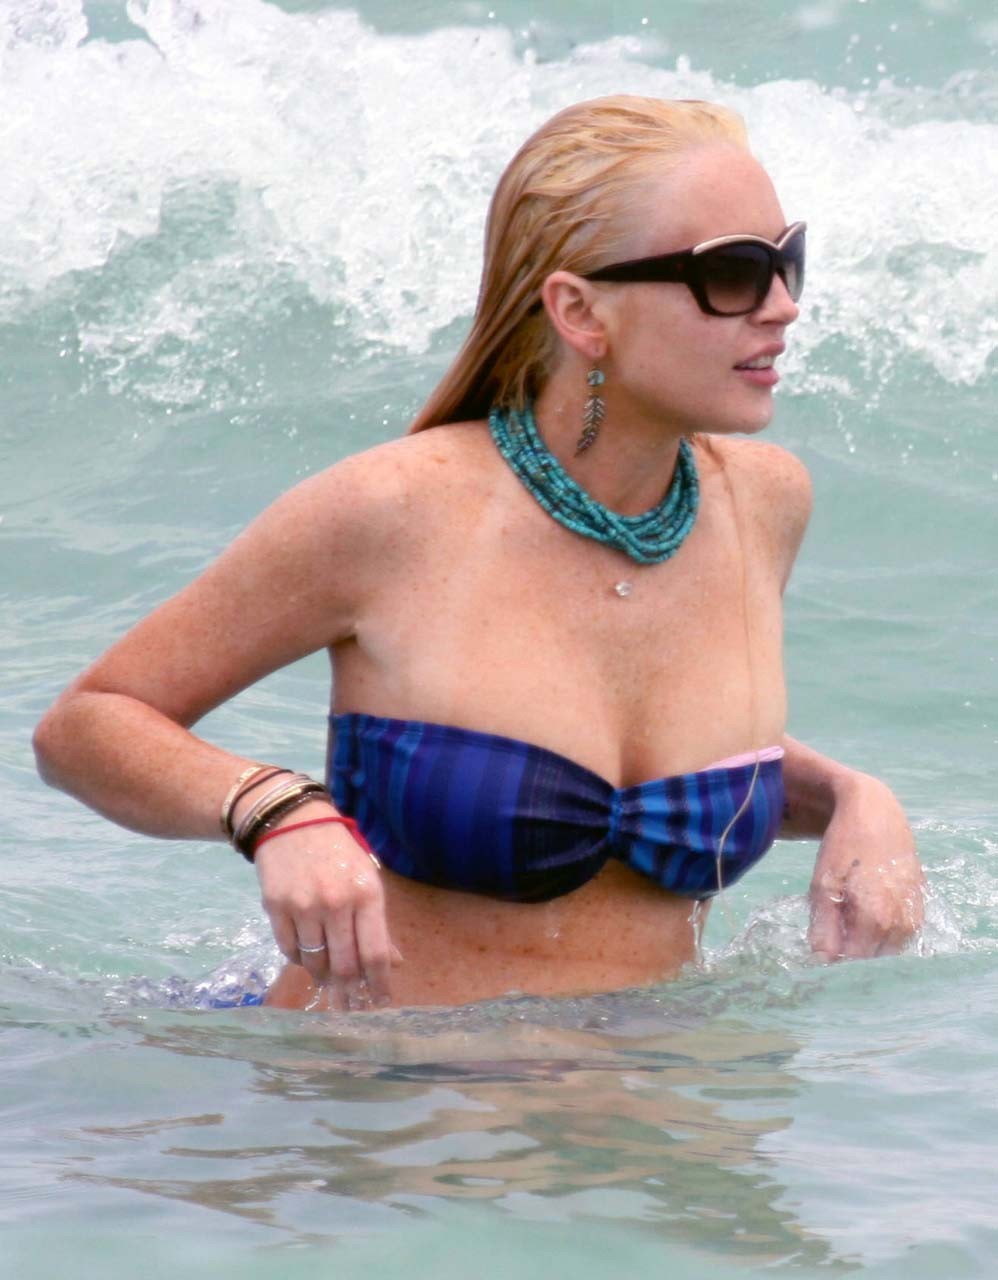 Lindsay Lohan fucking sexy and hot bikini and boob slip paparazzi photos #75304322